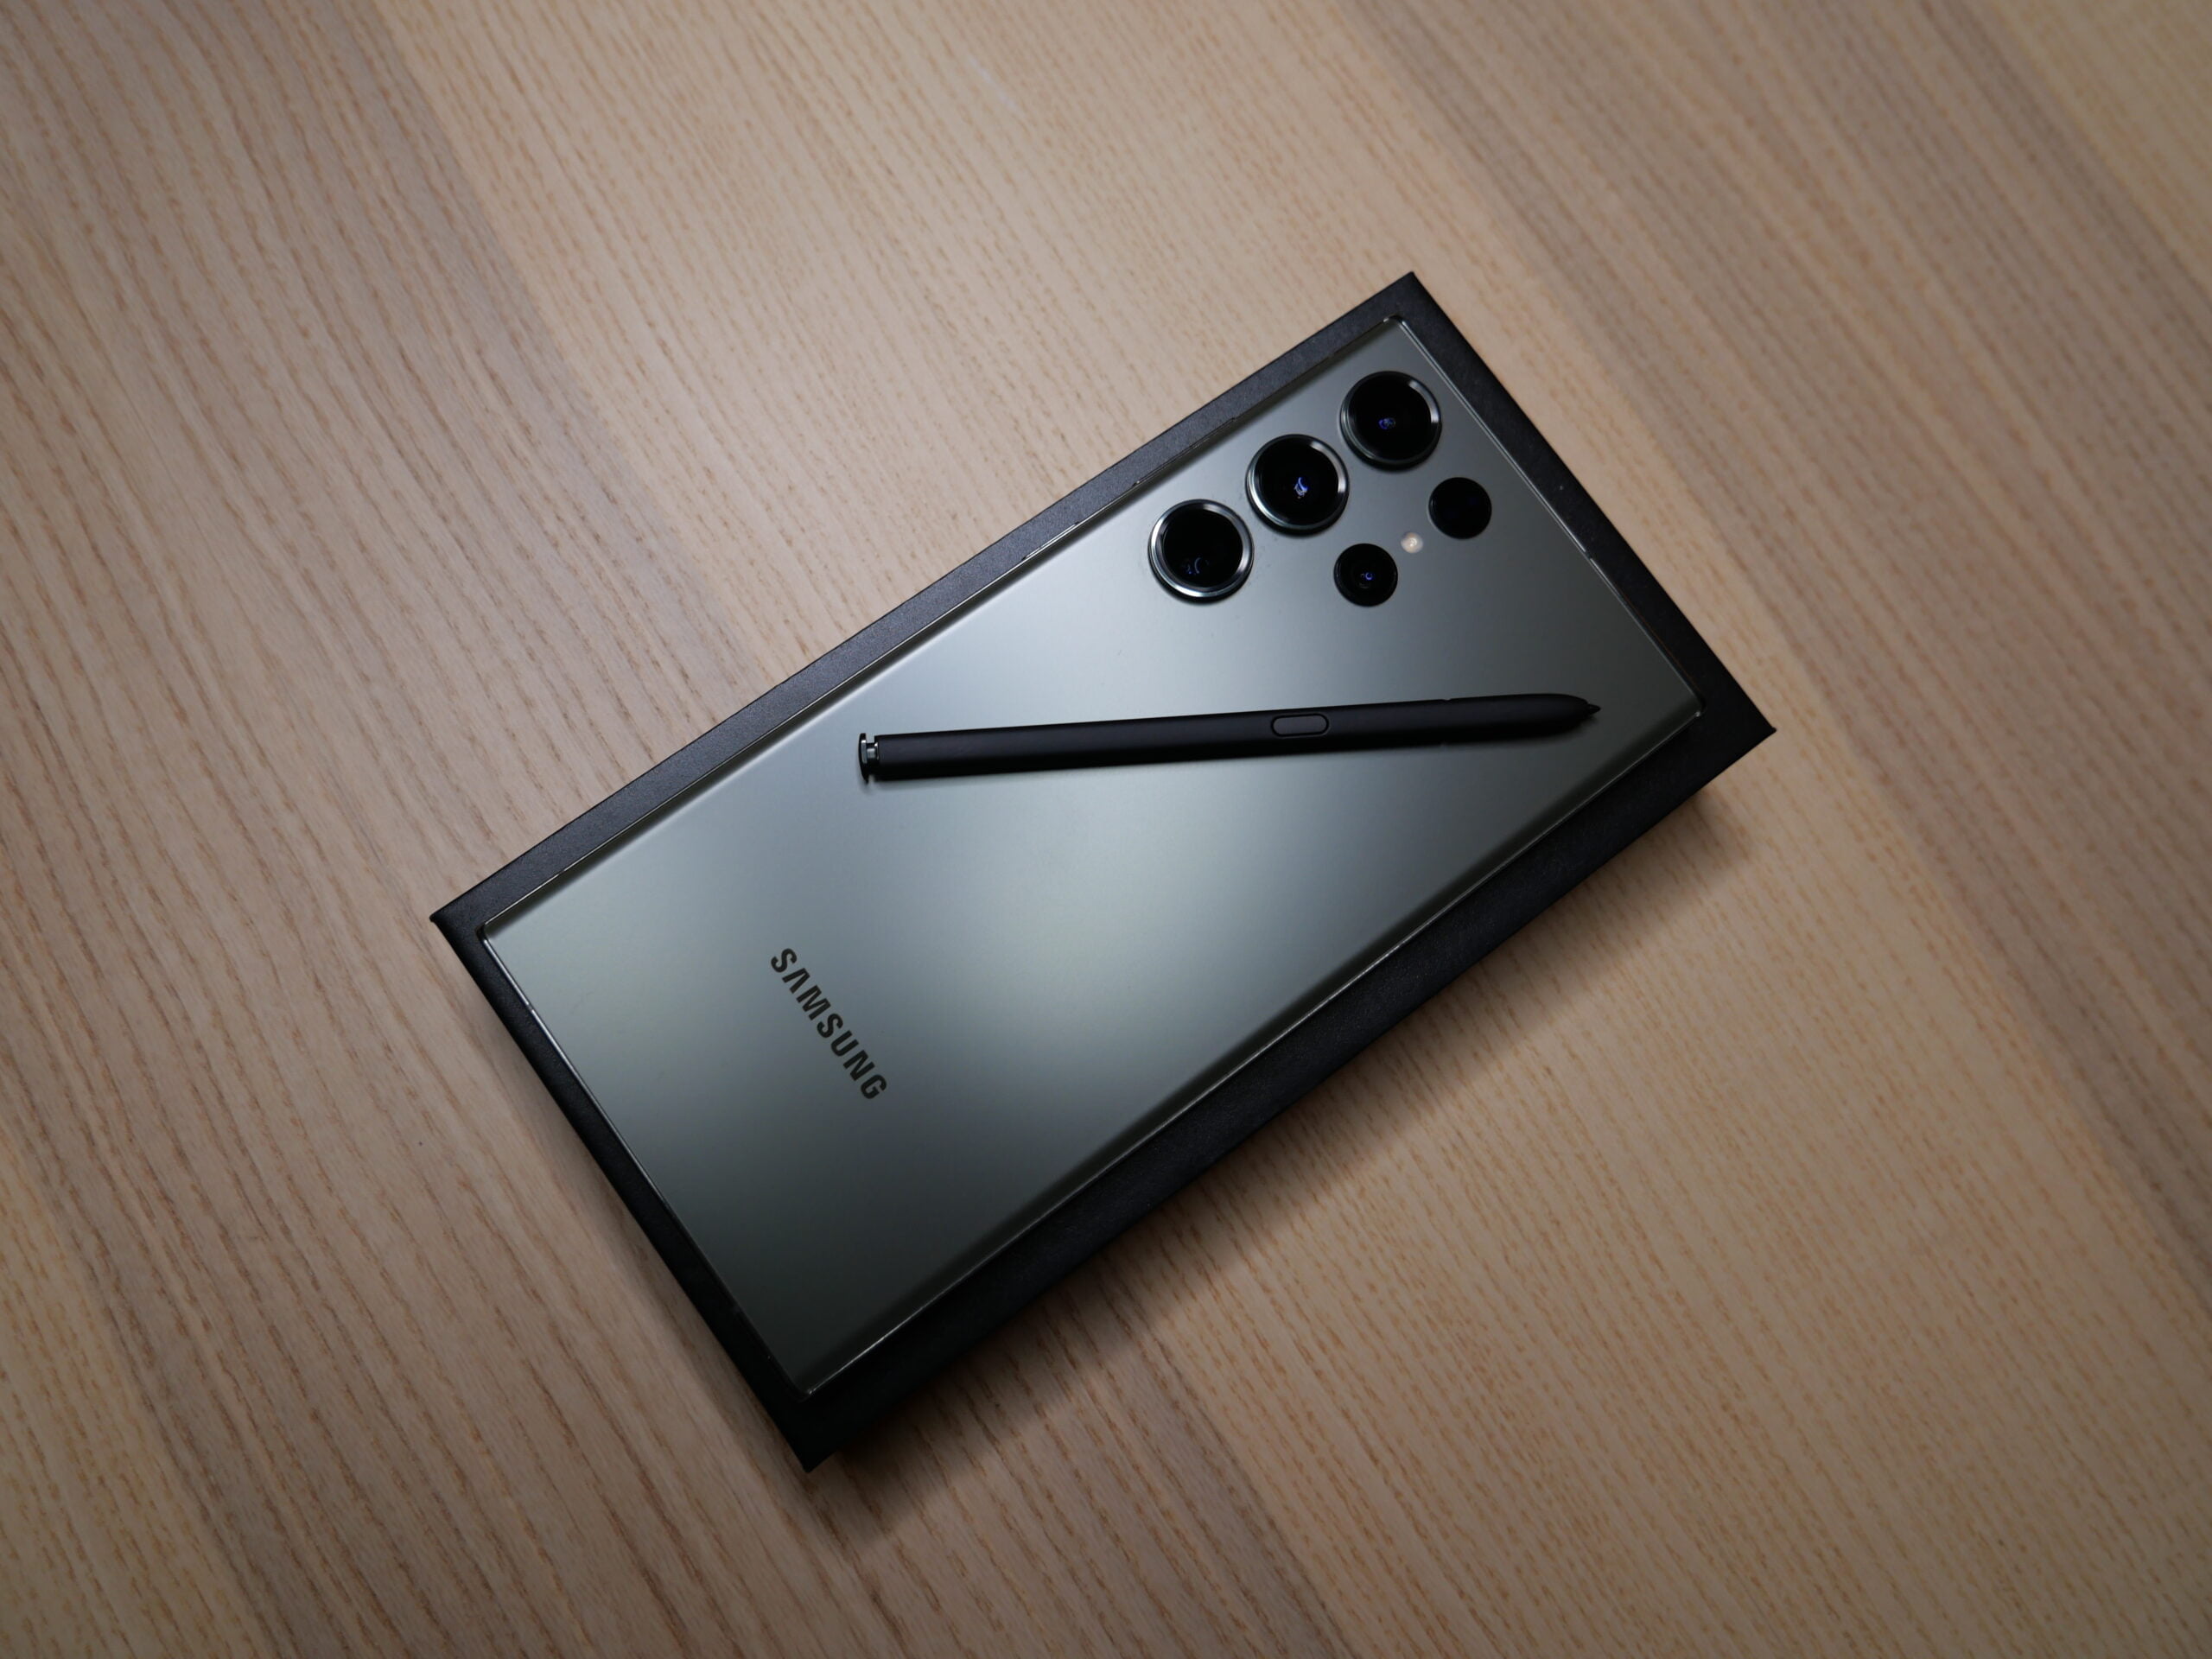 Czarny smartfon Samsung Galaxy Note z rysikiem S Pen położonym na jego tylnej części, leżący na drewnianym biurku.